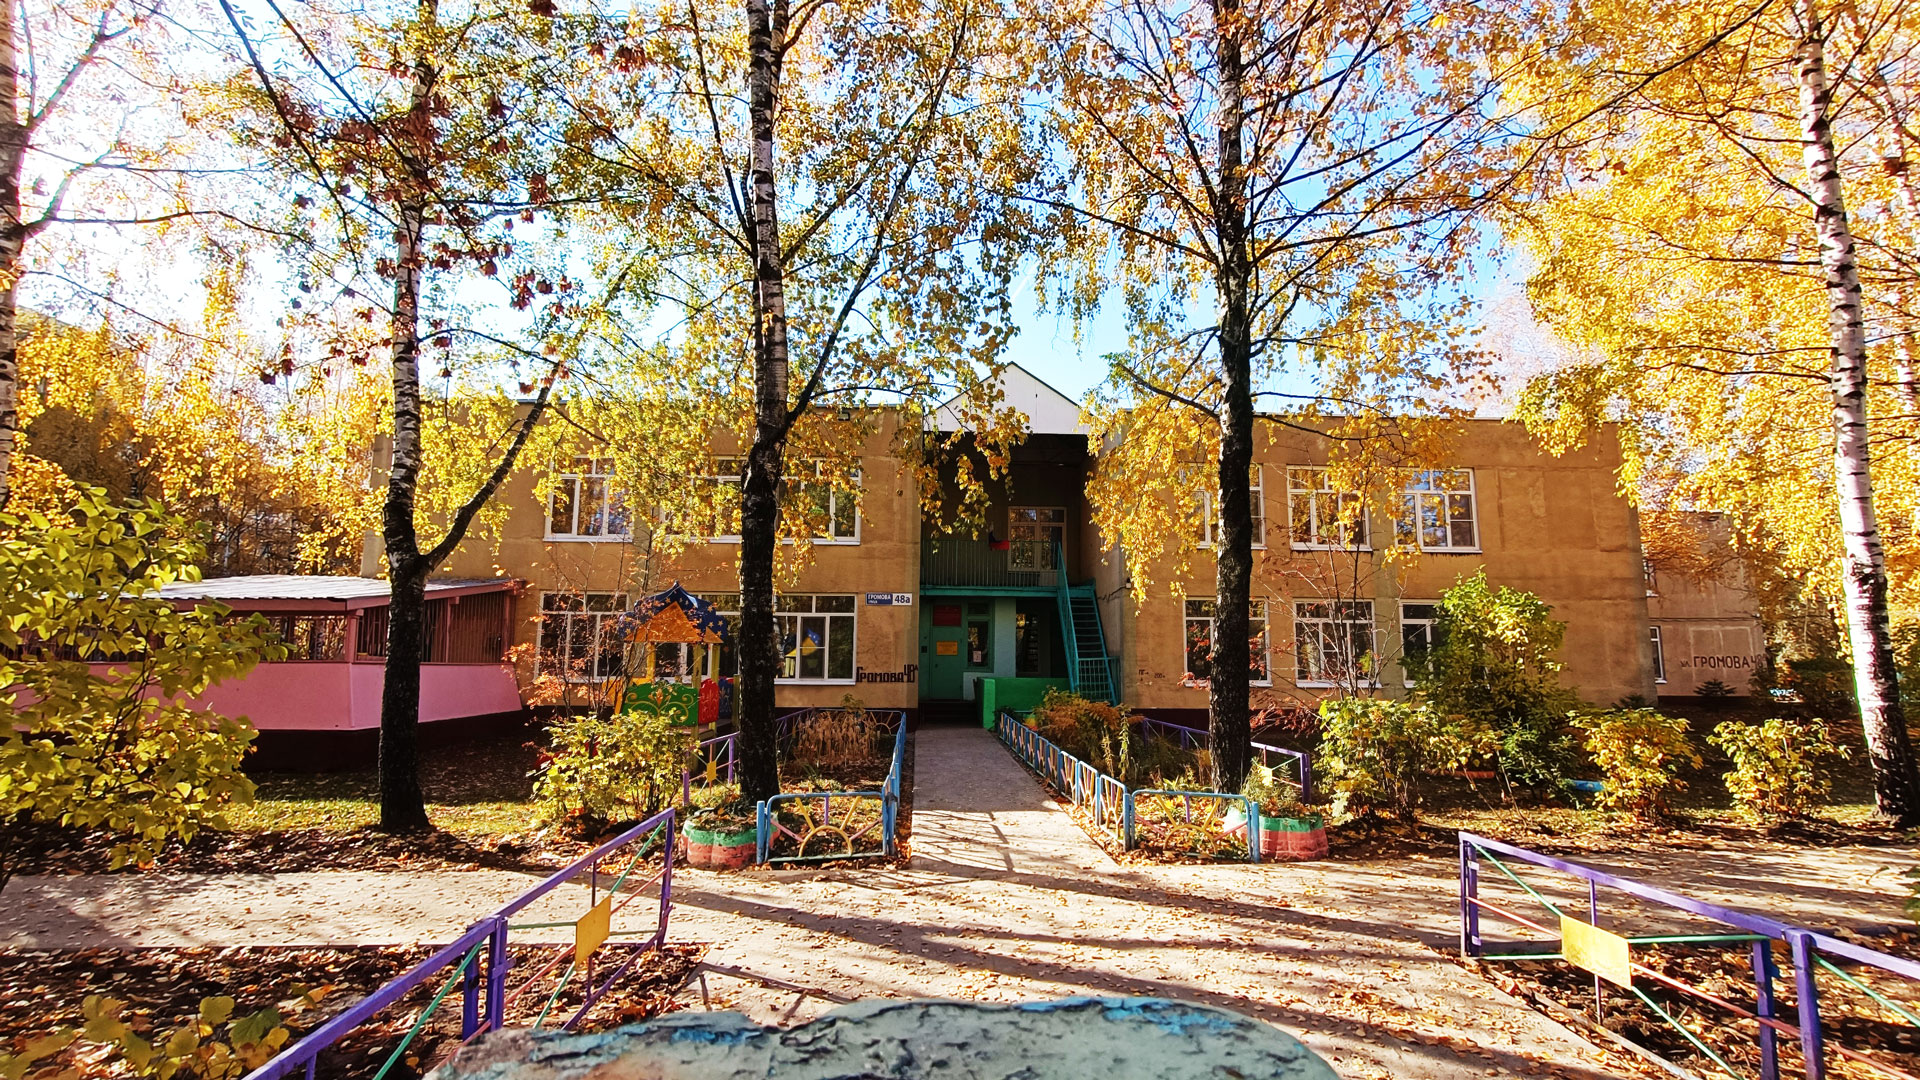 Детский сад 54 Ярославль: общий вид здания садика.